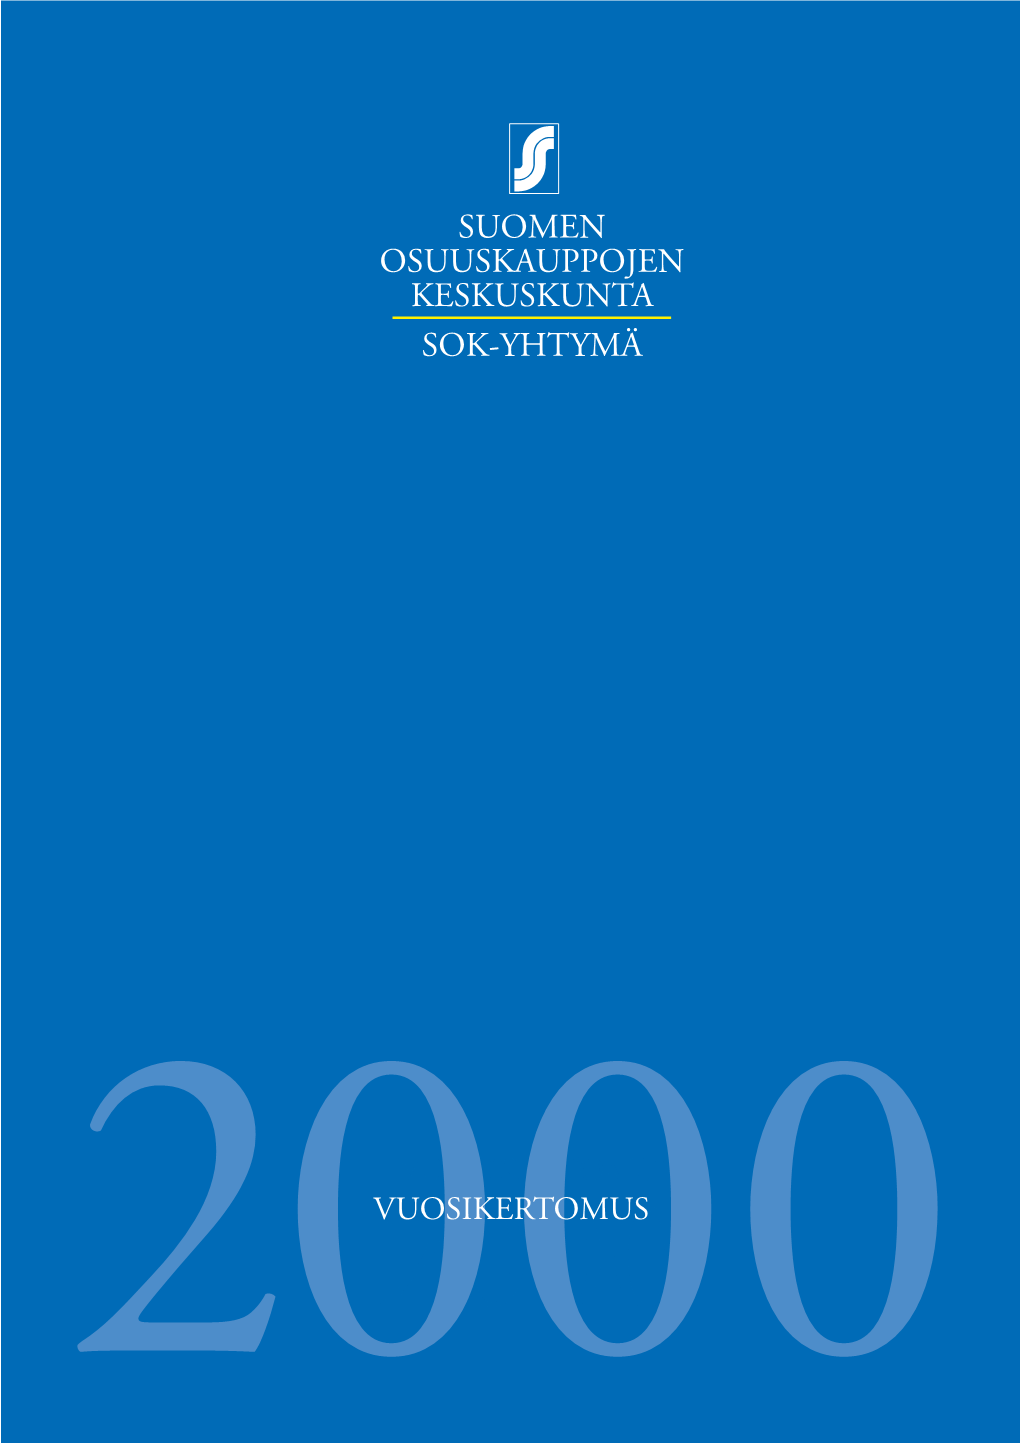 SOK Vuosikertomus 2000